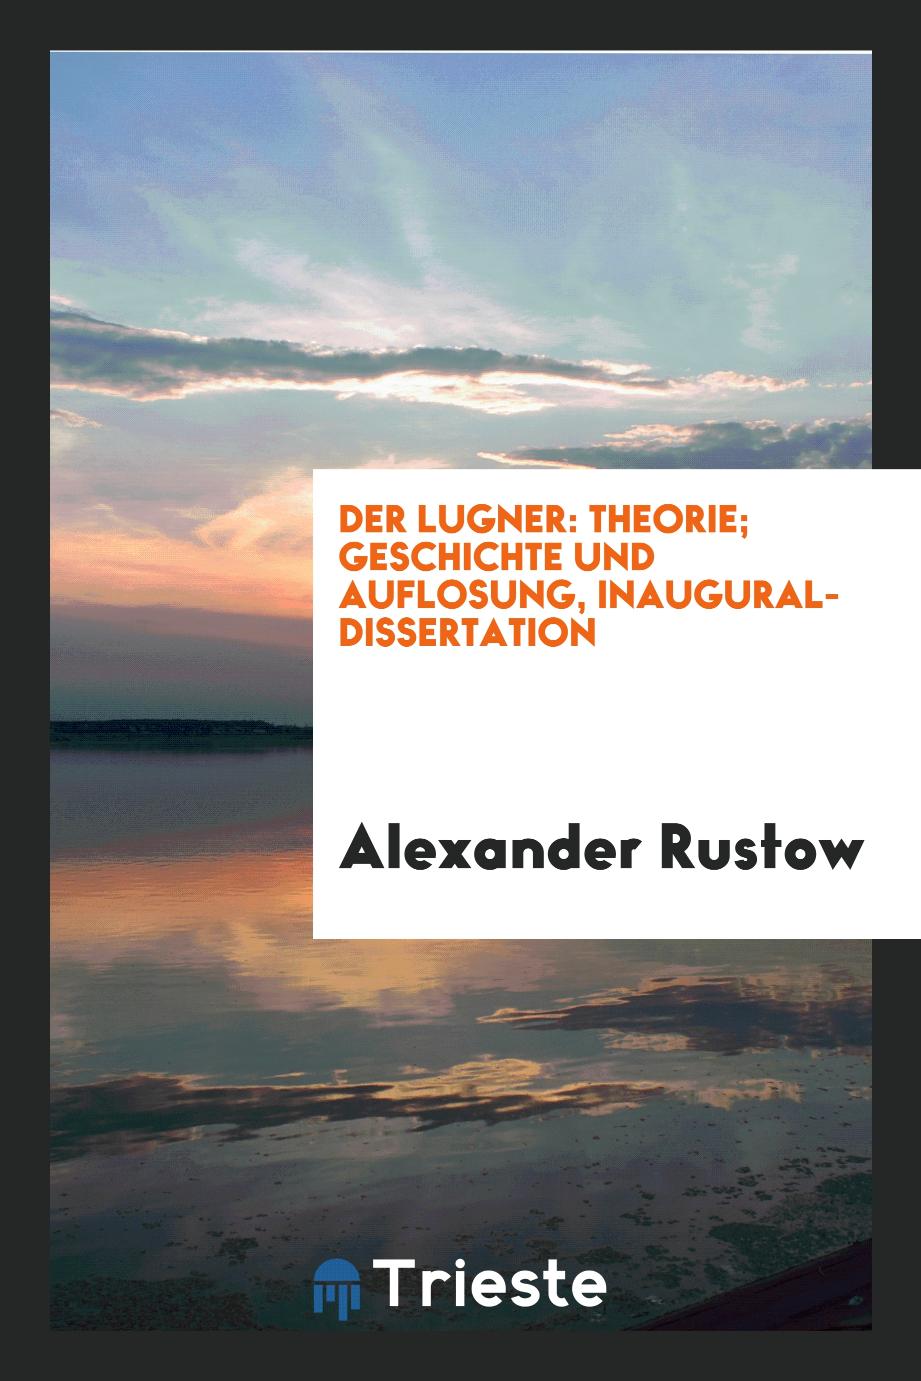 Der Lugner: Theorie; Geschichte und Auflosung, inaugural-dissertation